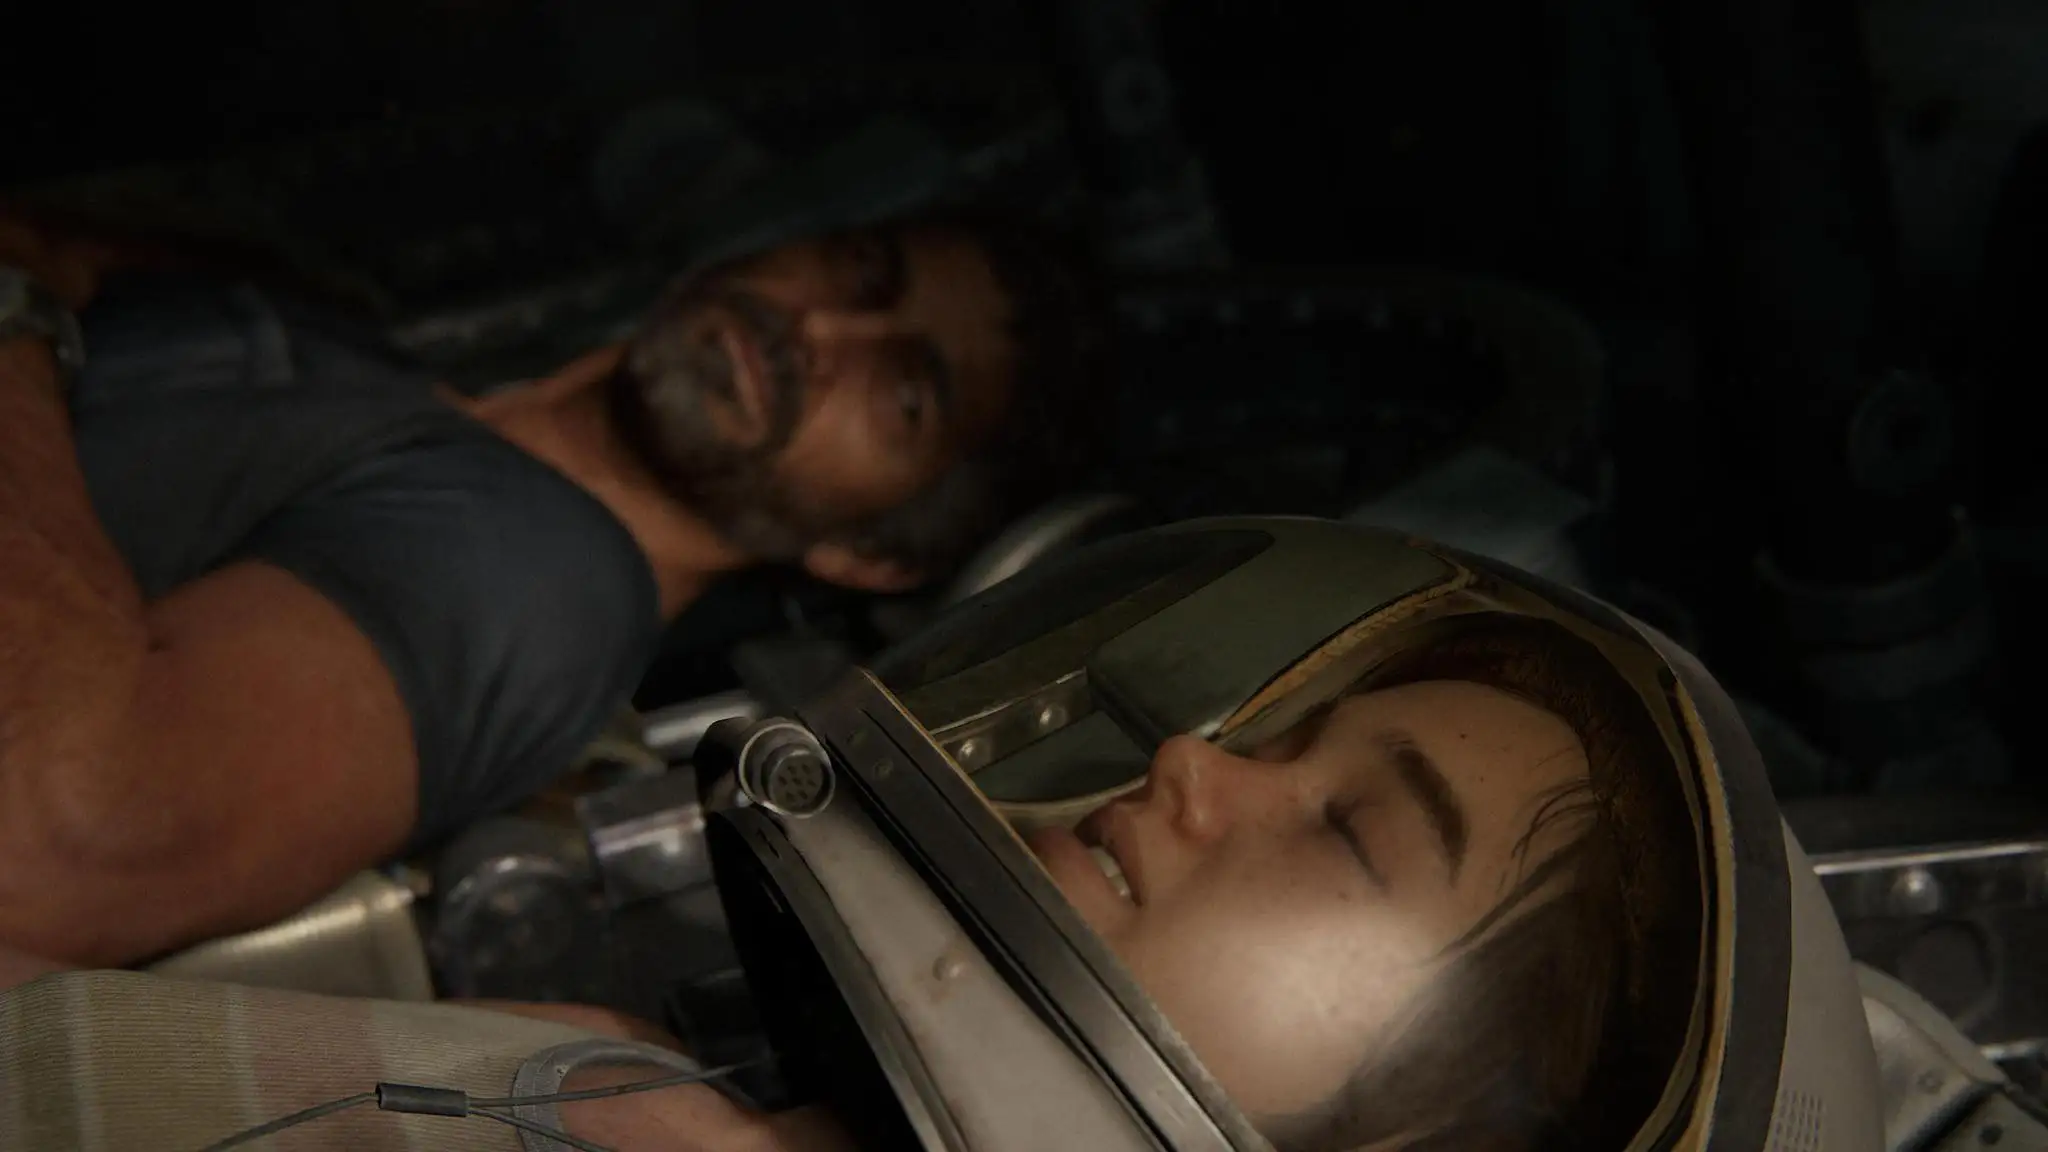 Scène culte de The Last of Us Part II lorsque Joel emmène Ellie dans une capsule spatiale pour son anniversaire